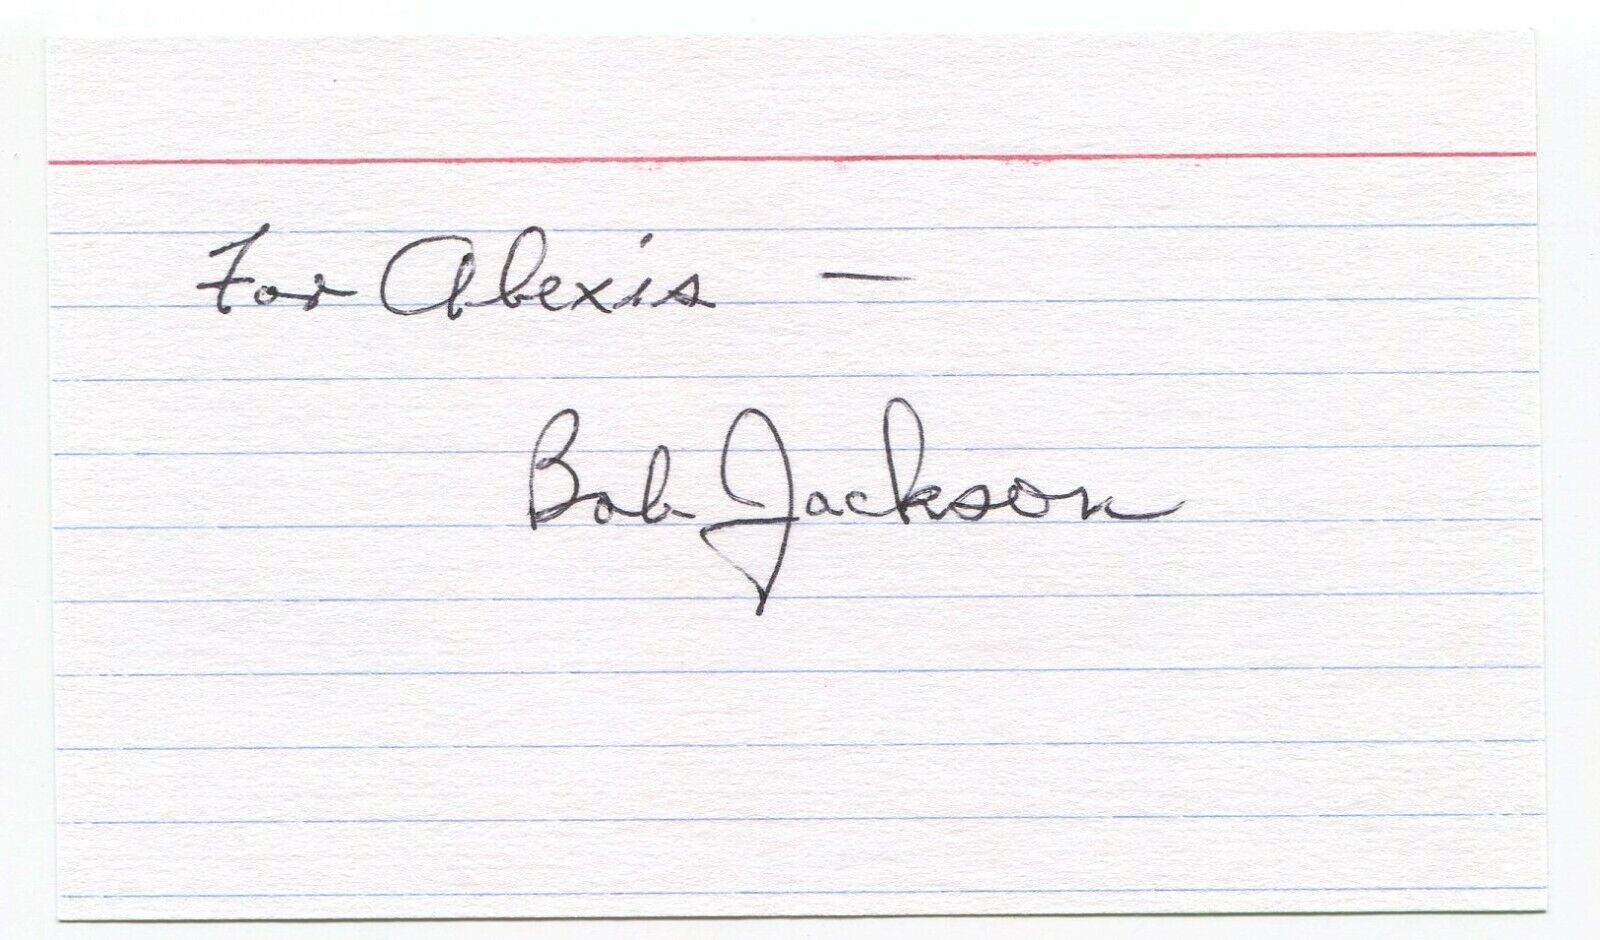 Bob Jackson Signed 3x5 Index Card JFK Lee Harvey Oswald Jack Ruby Photo Poster painting Pulitzer